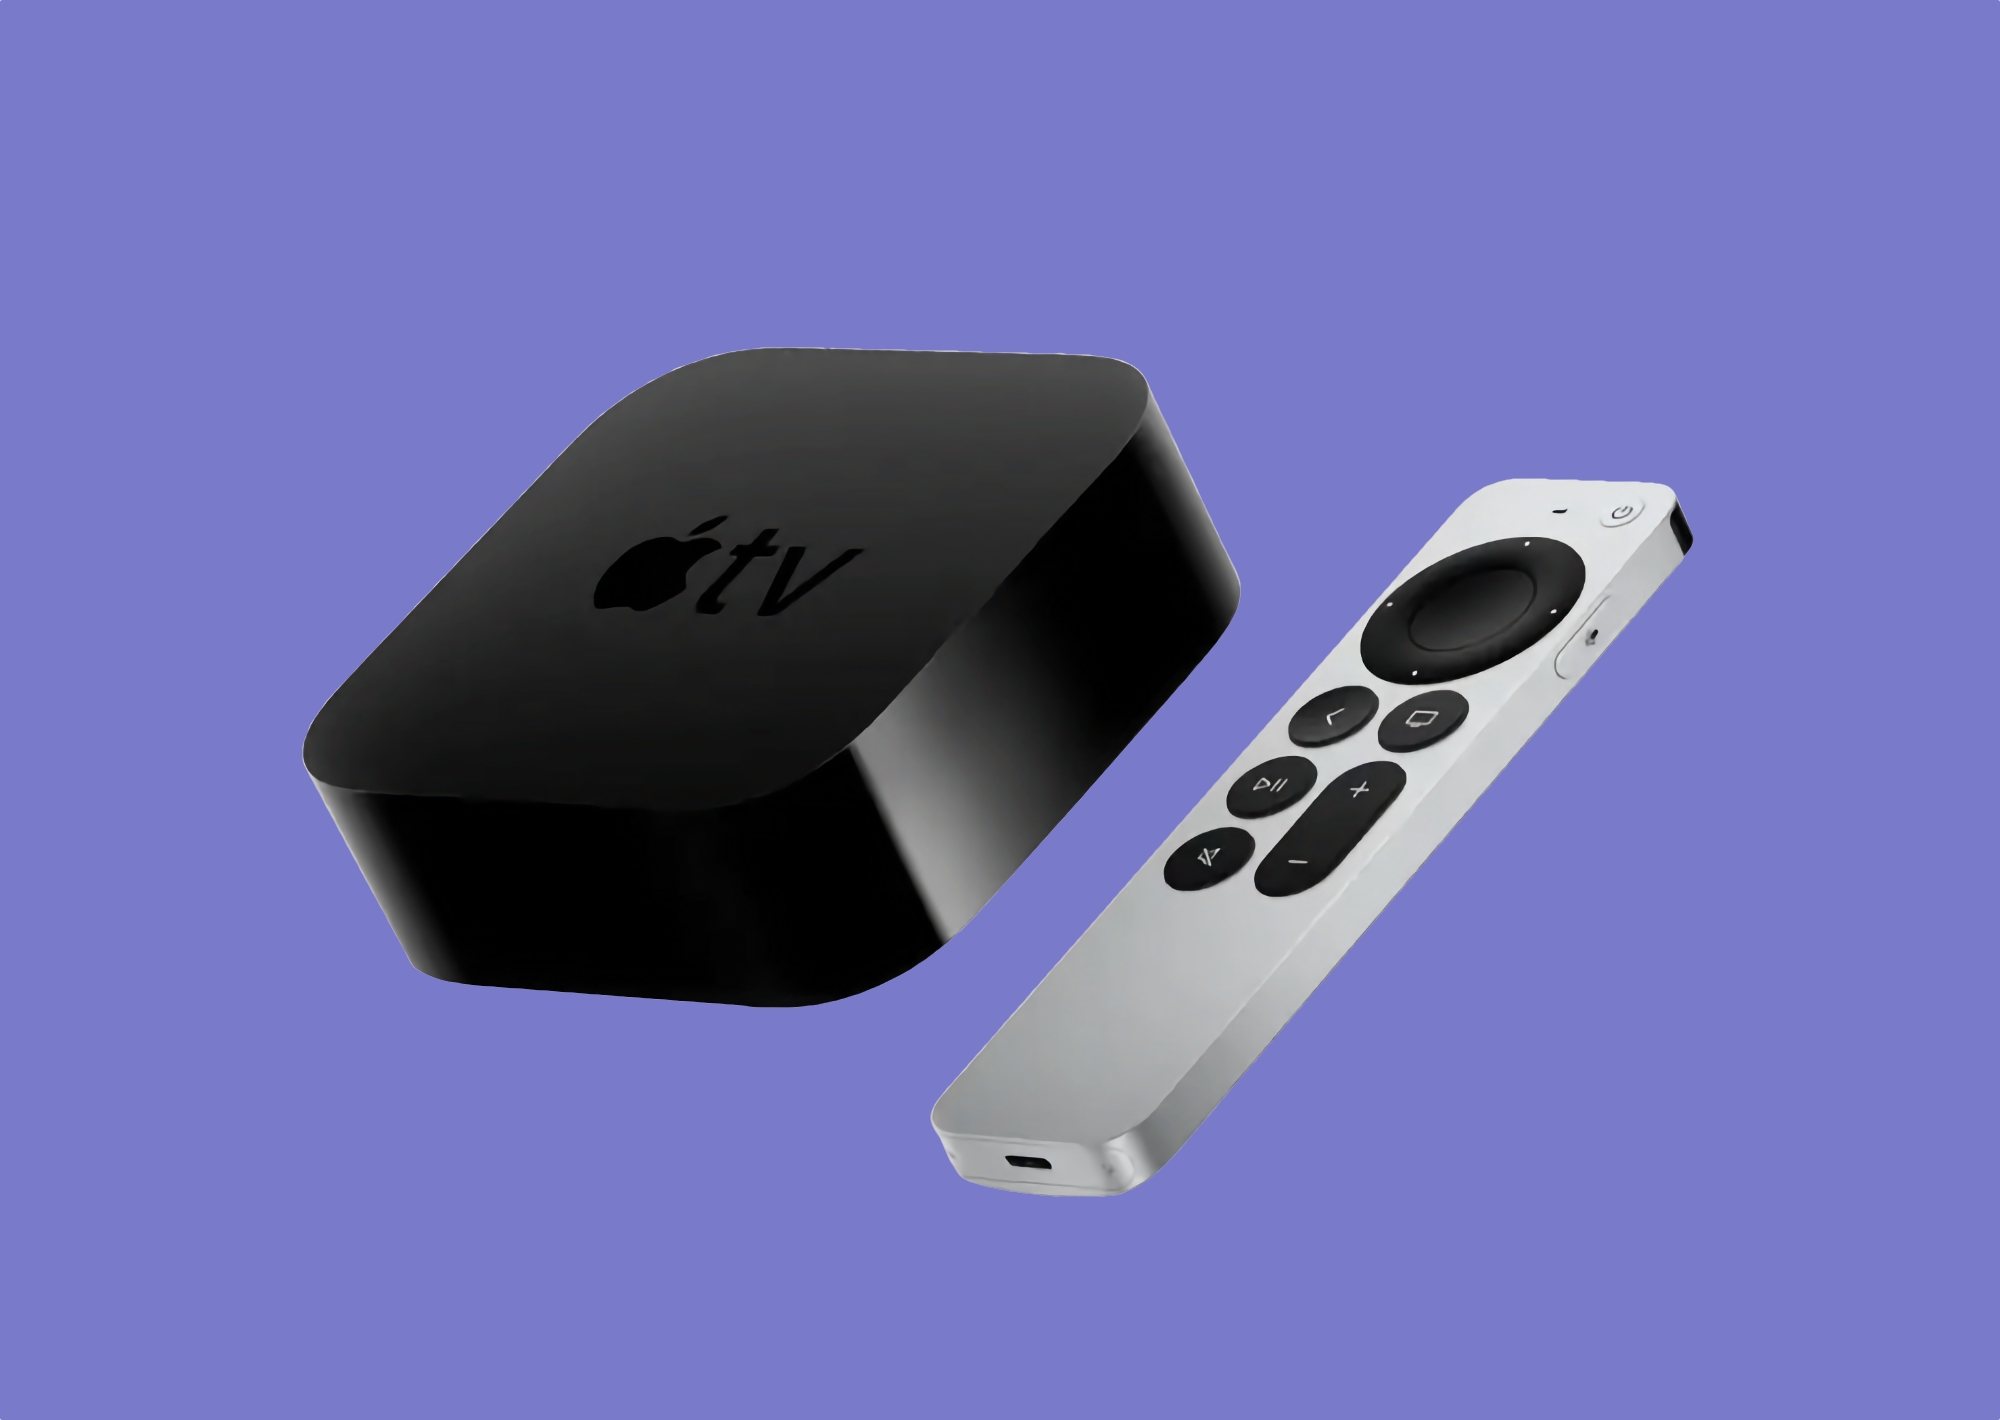 Sale a la venta el Apple TV 4K (2022) con chip A15 Bionic, USB Type-C, Ethernet, soporte HDR10+ y precio desde 129 dólares